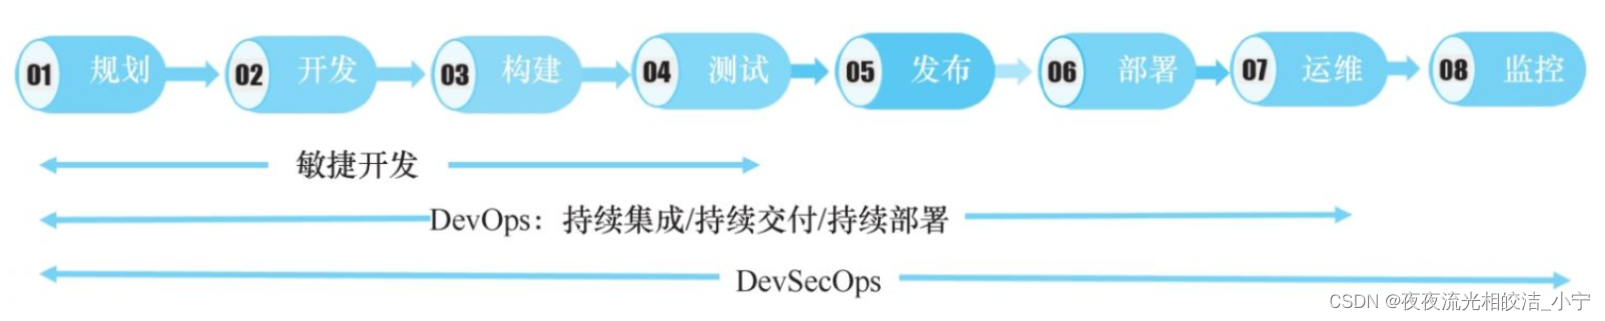 DevSecOps平台架构组成